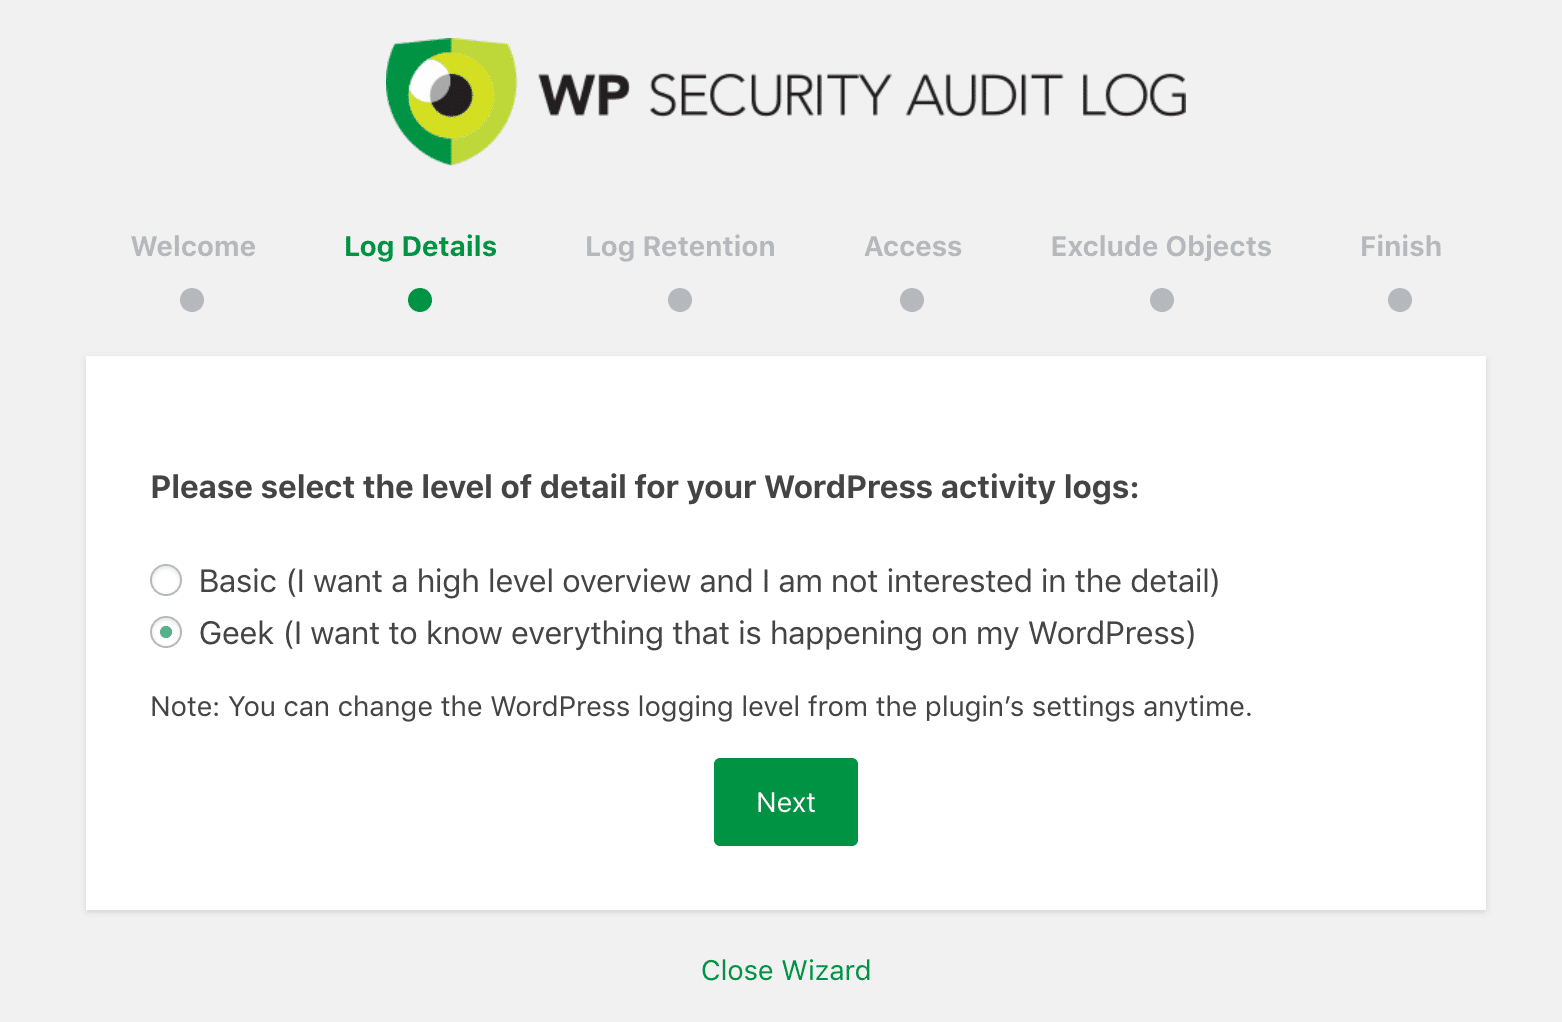 WP Security Audit Log geek settings